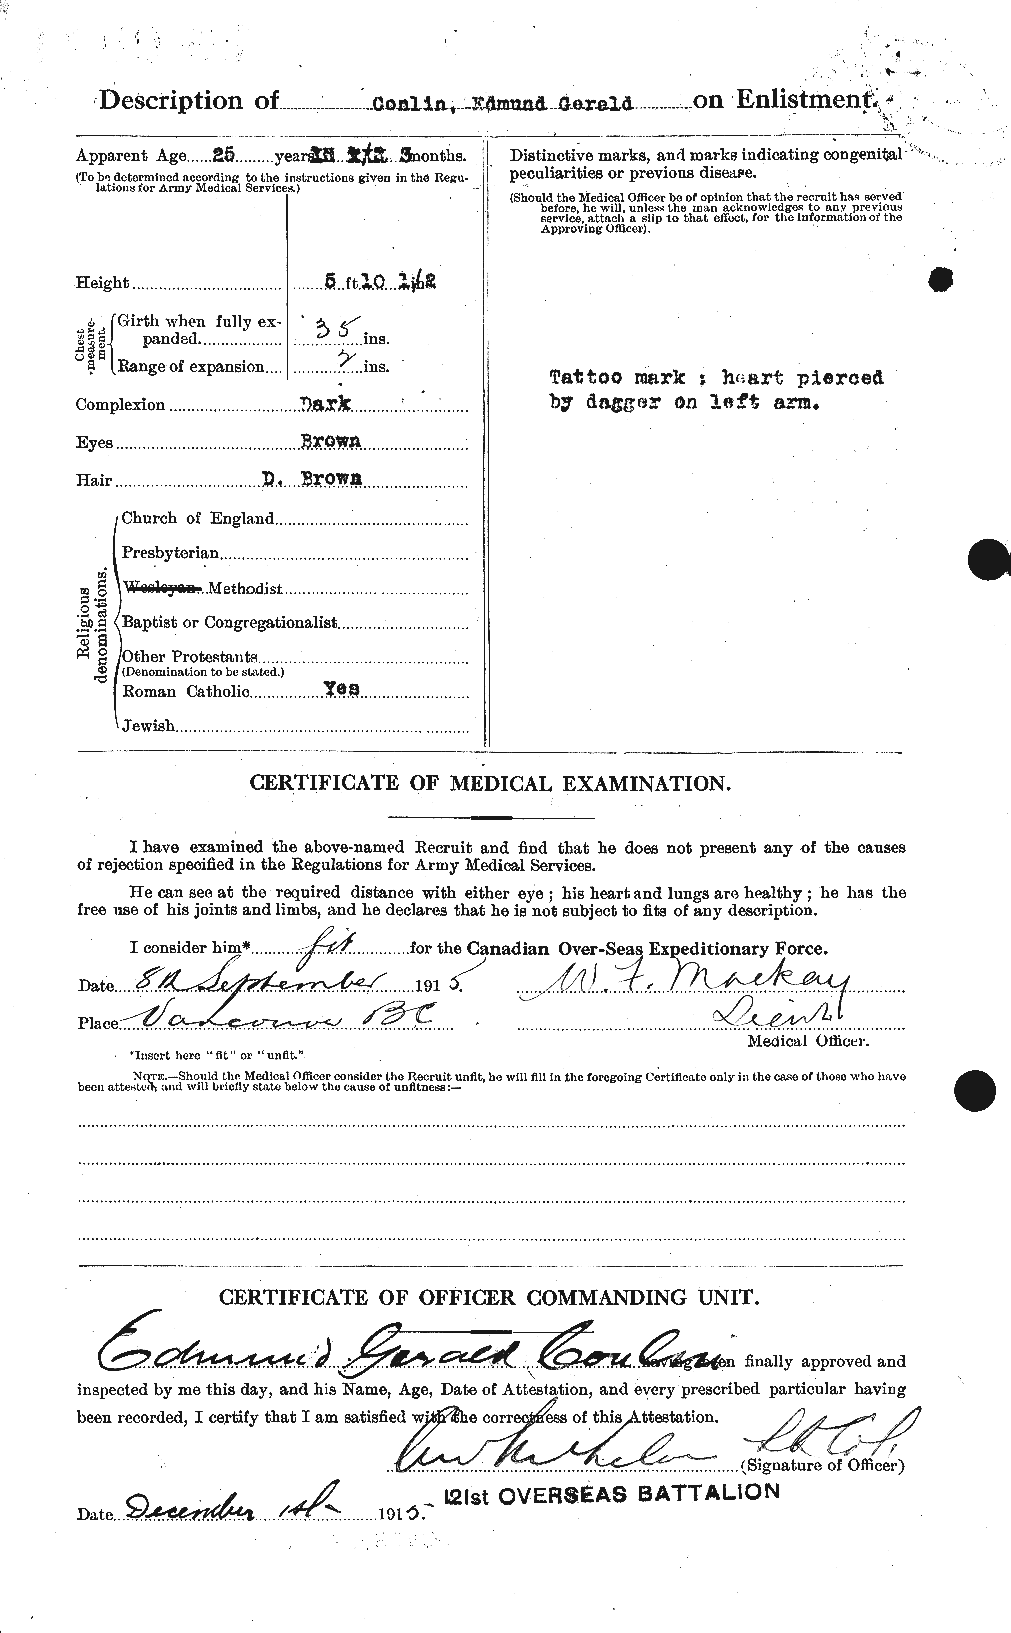 Dossiers du Personnel de la Première Guerre mondiale - CEC 067782b